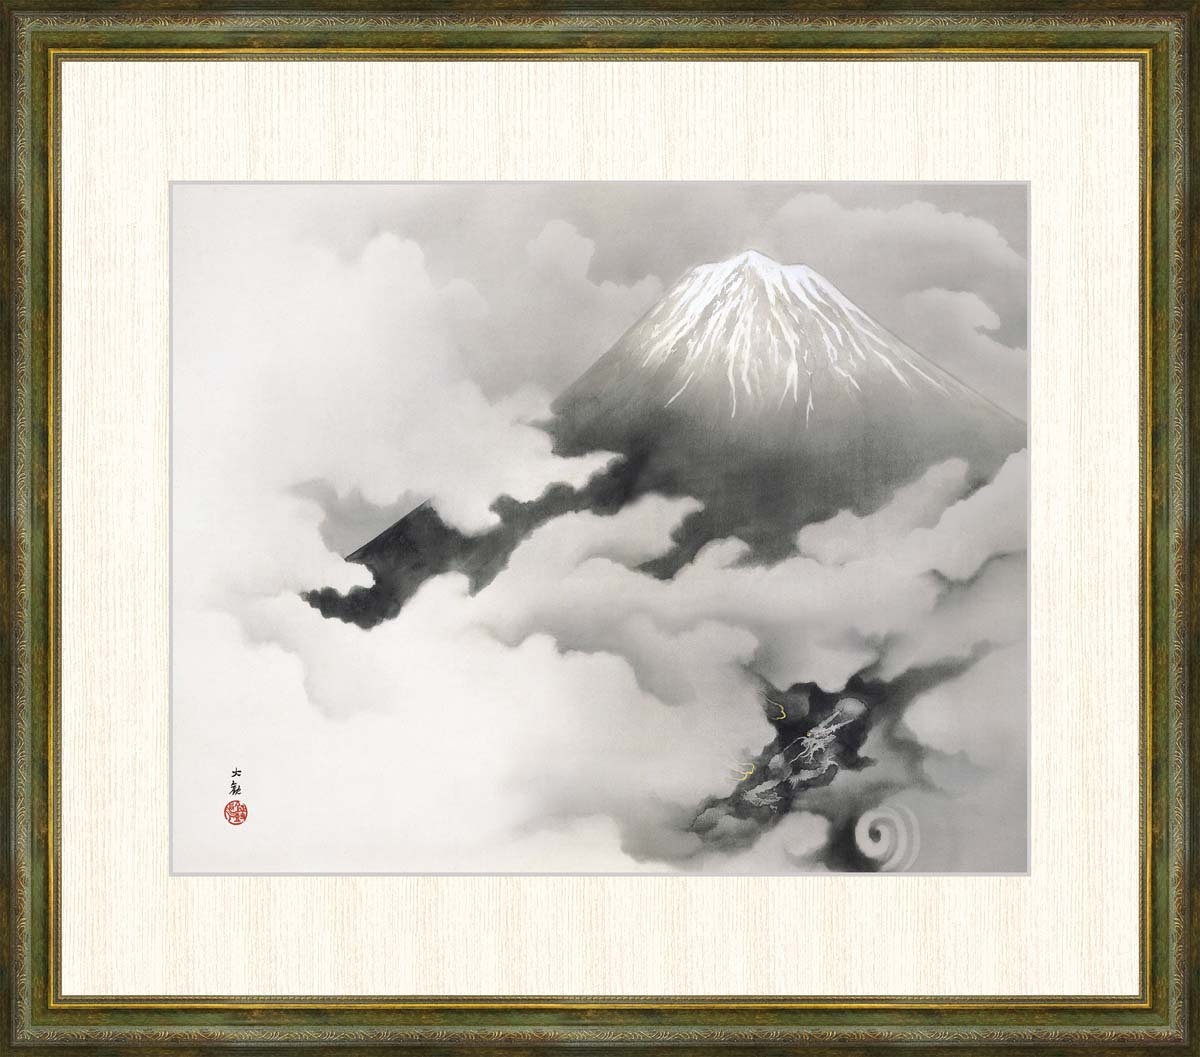 고화질 디지털 인쇄, 액자 그림, 요코야마 다이칸(Yokoyama Taikan)의 용의 도약(Dragon Leaping), F8, 삽화, 인쇄물, 다른 사람